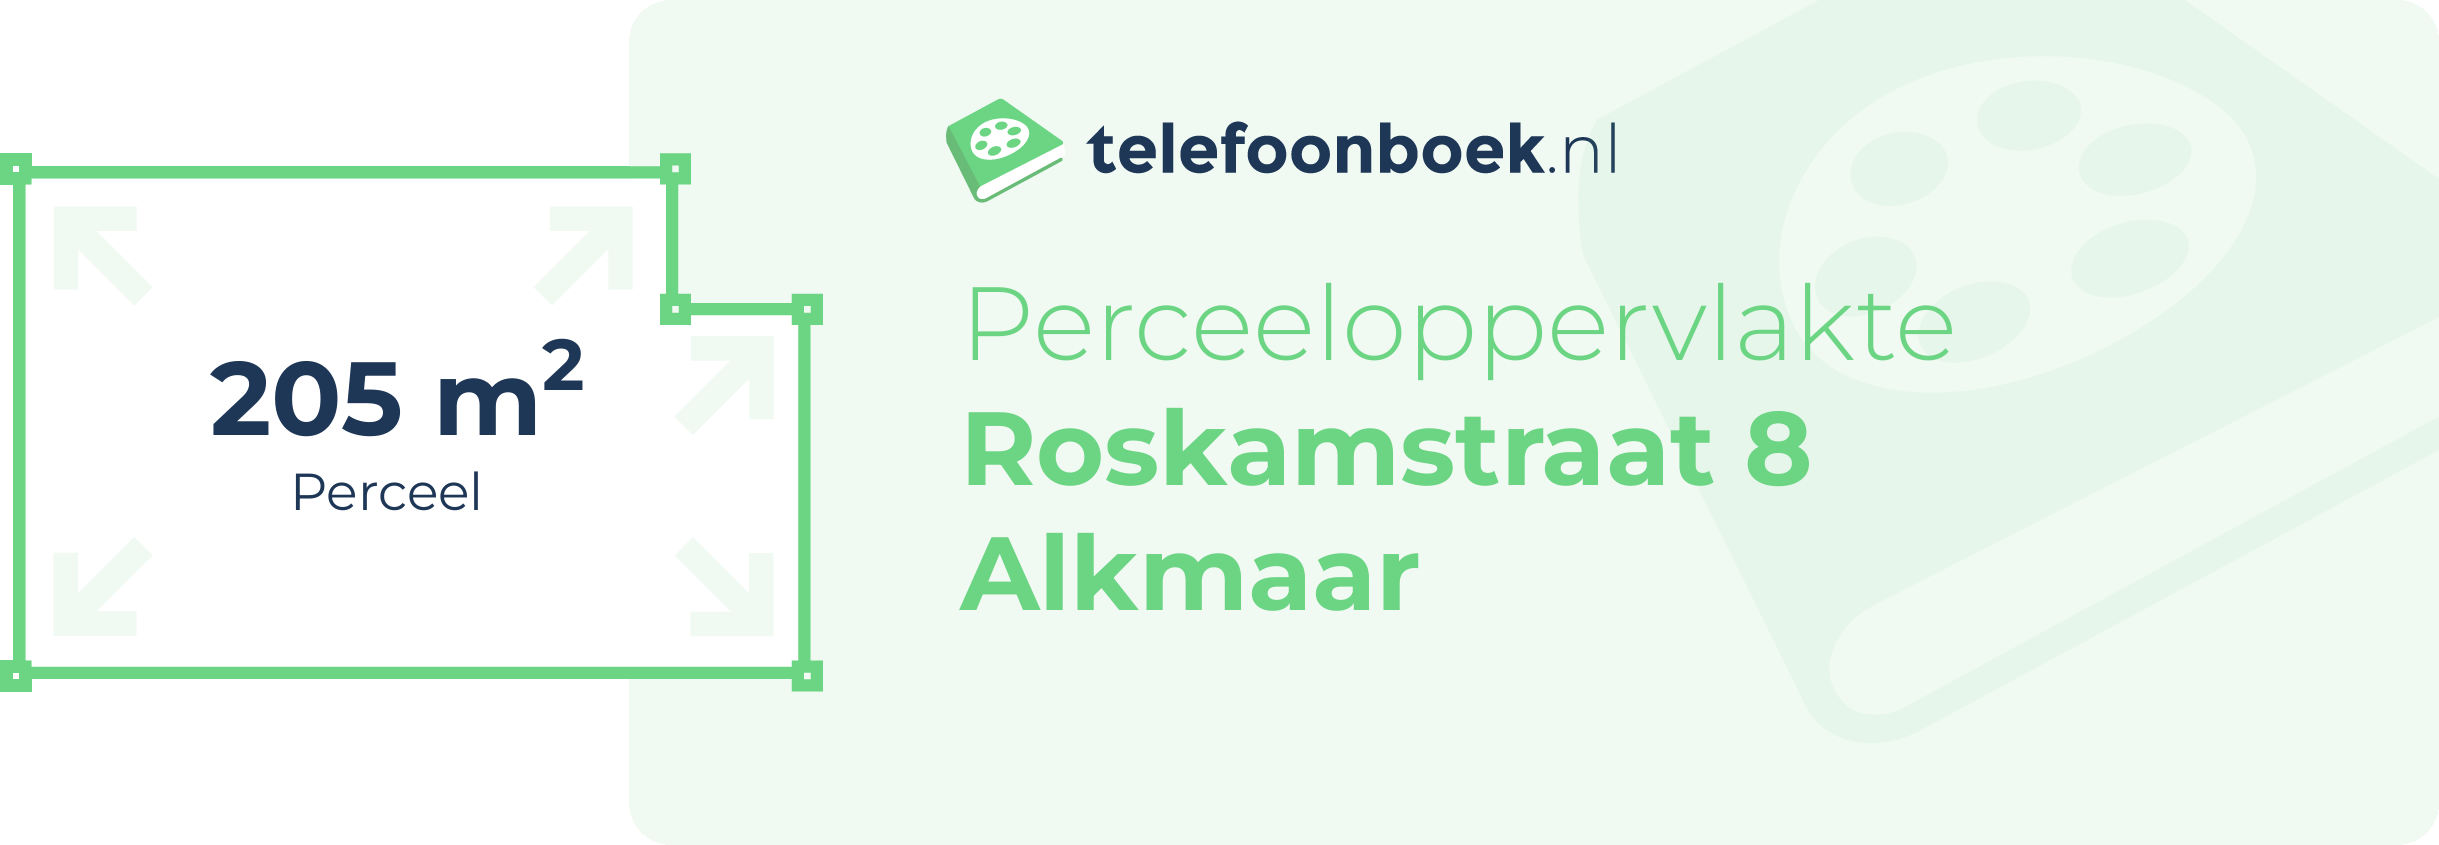 Perceeloppervlakte Roskamstraat 8 Alkmaar